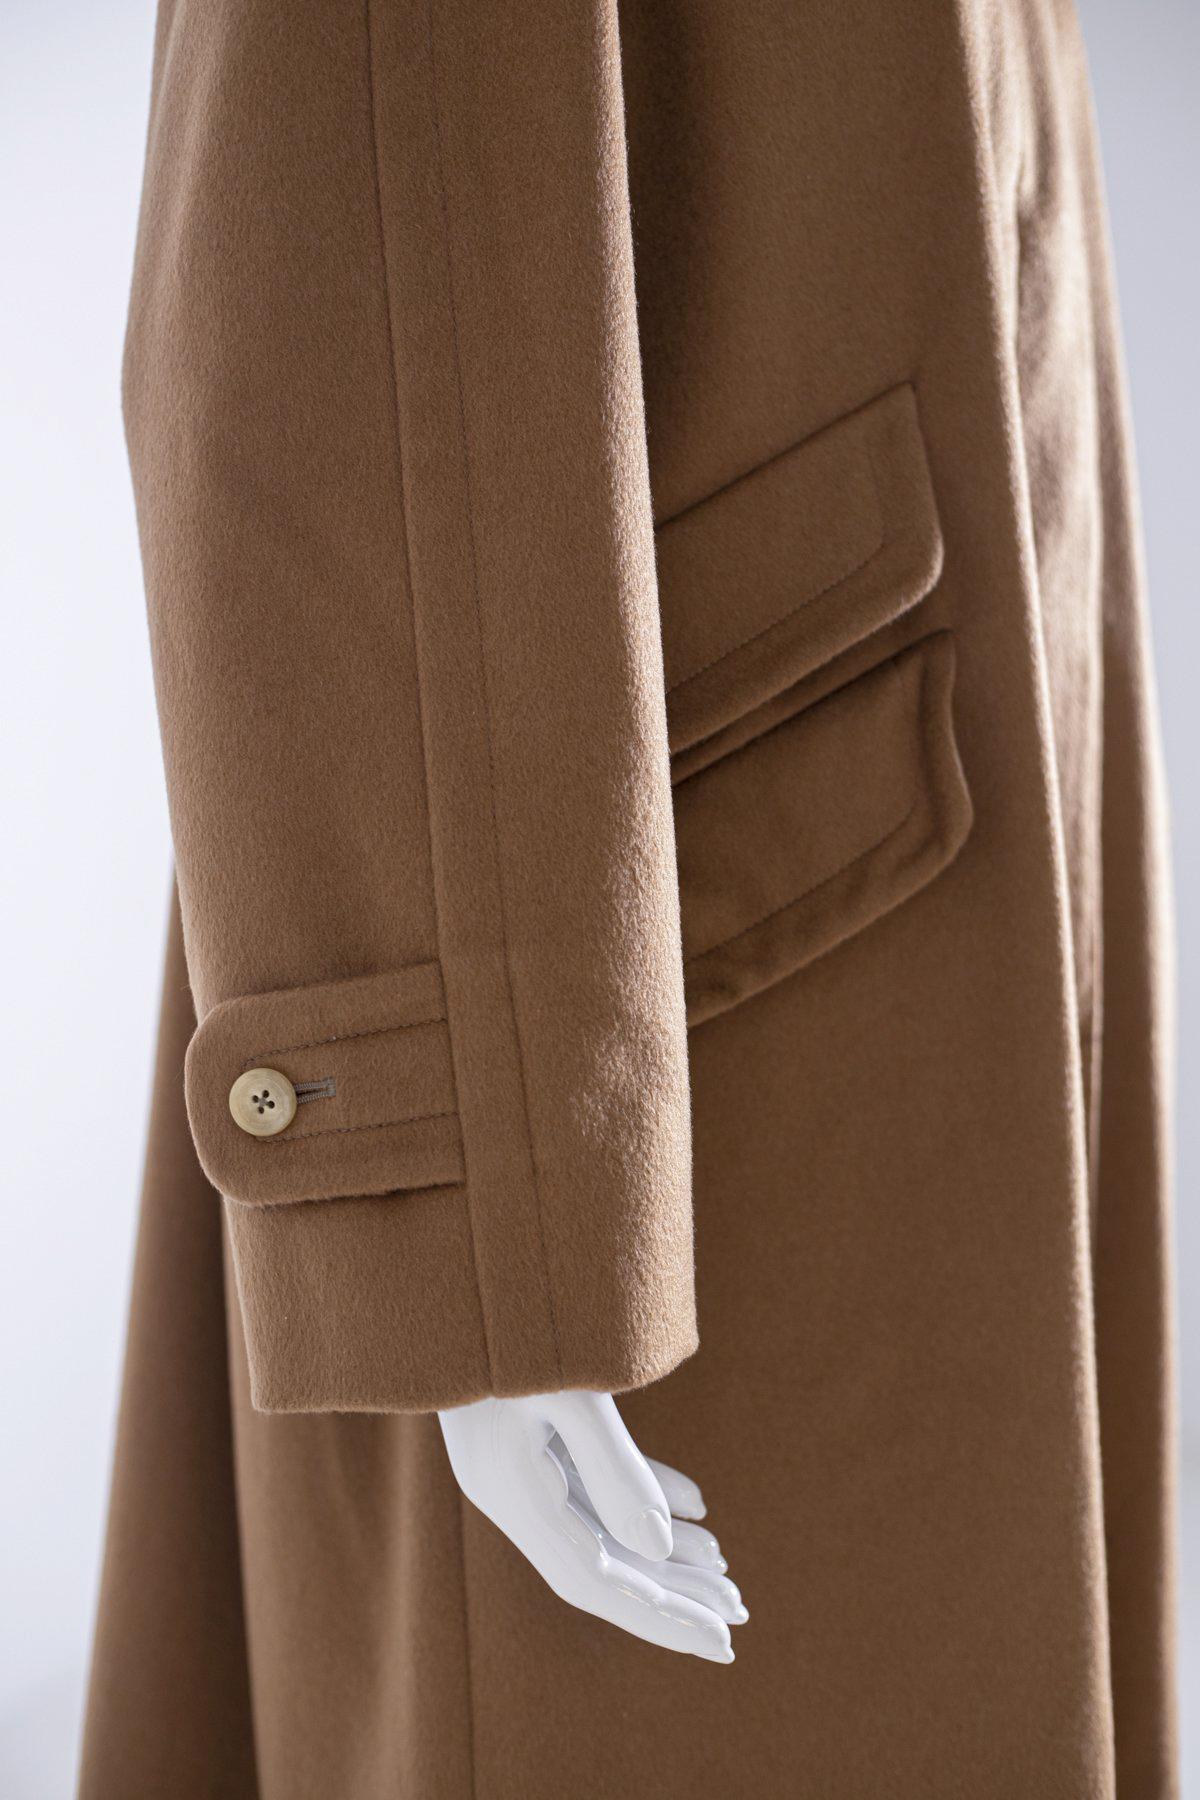 Superbe manteau pour femme de couleur camel de la marque Aquascutum, ce manteau est 100% pur cachemire. La ligne est classique, la longueur arrive juste en dessous des genoux, sur le devant trois poches confortables. La veste est parfaite, jamais